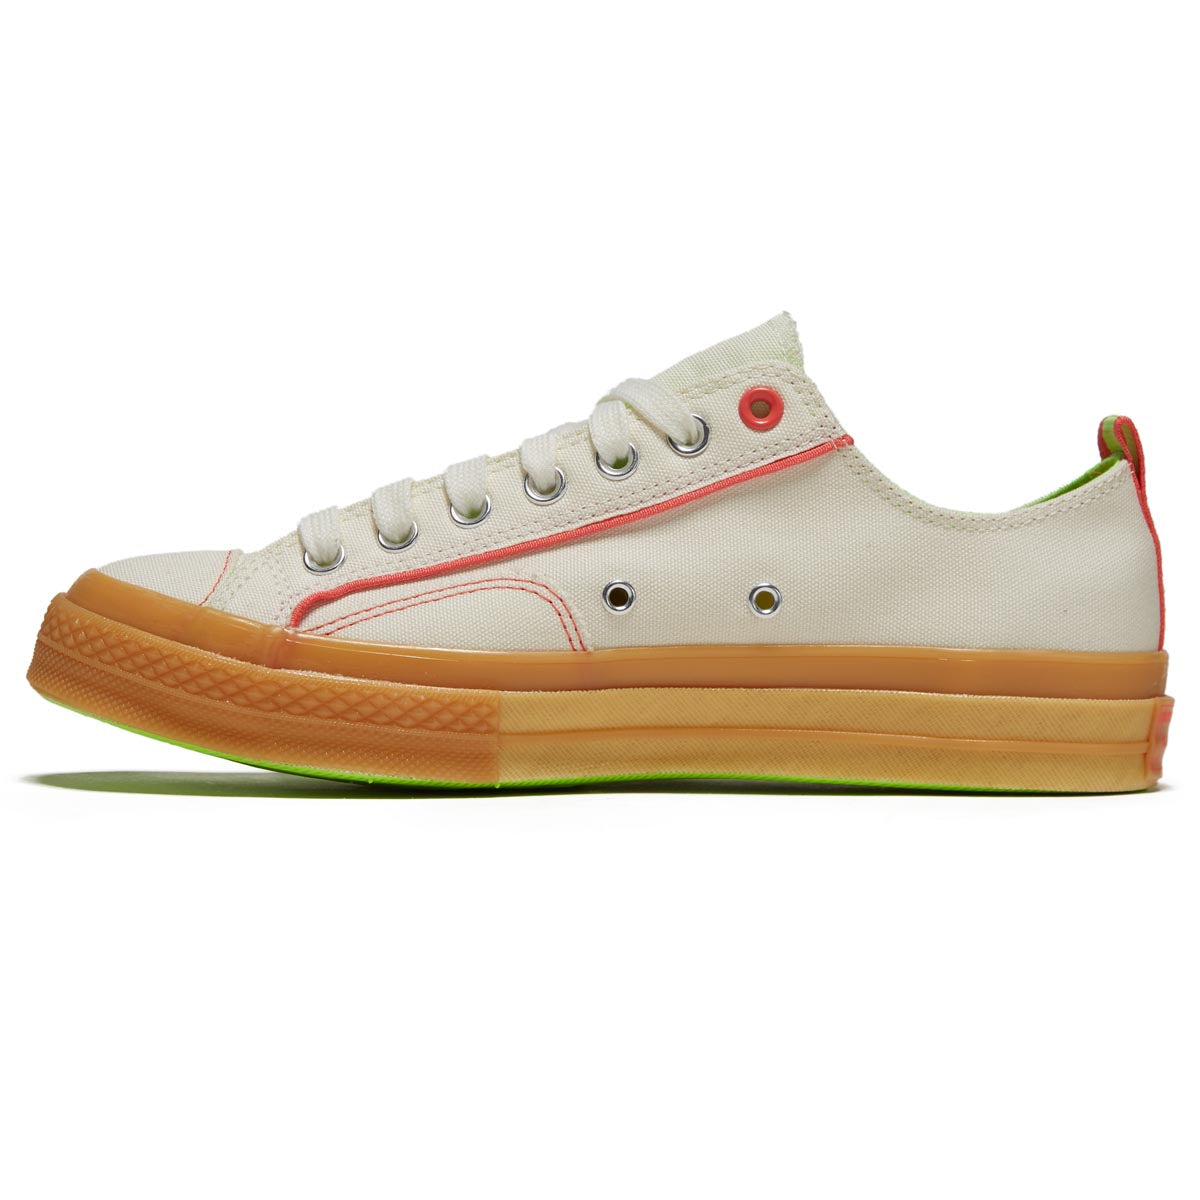 Converse Chuck 70 Ox Shoes - Egret/Gum/Watermelon Slushy image 2